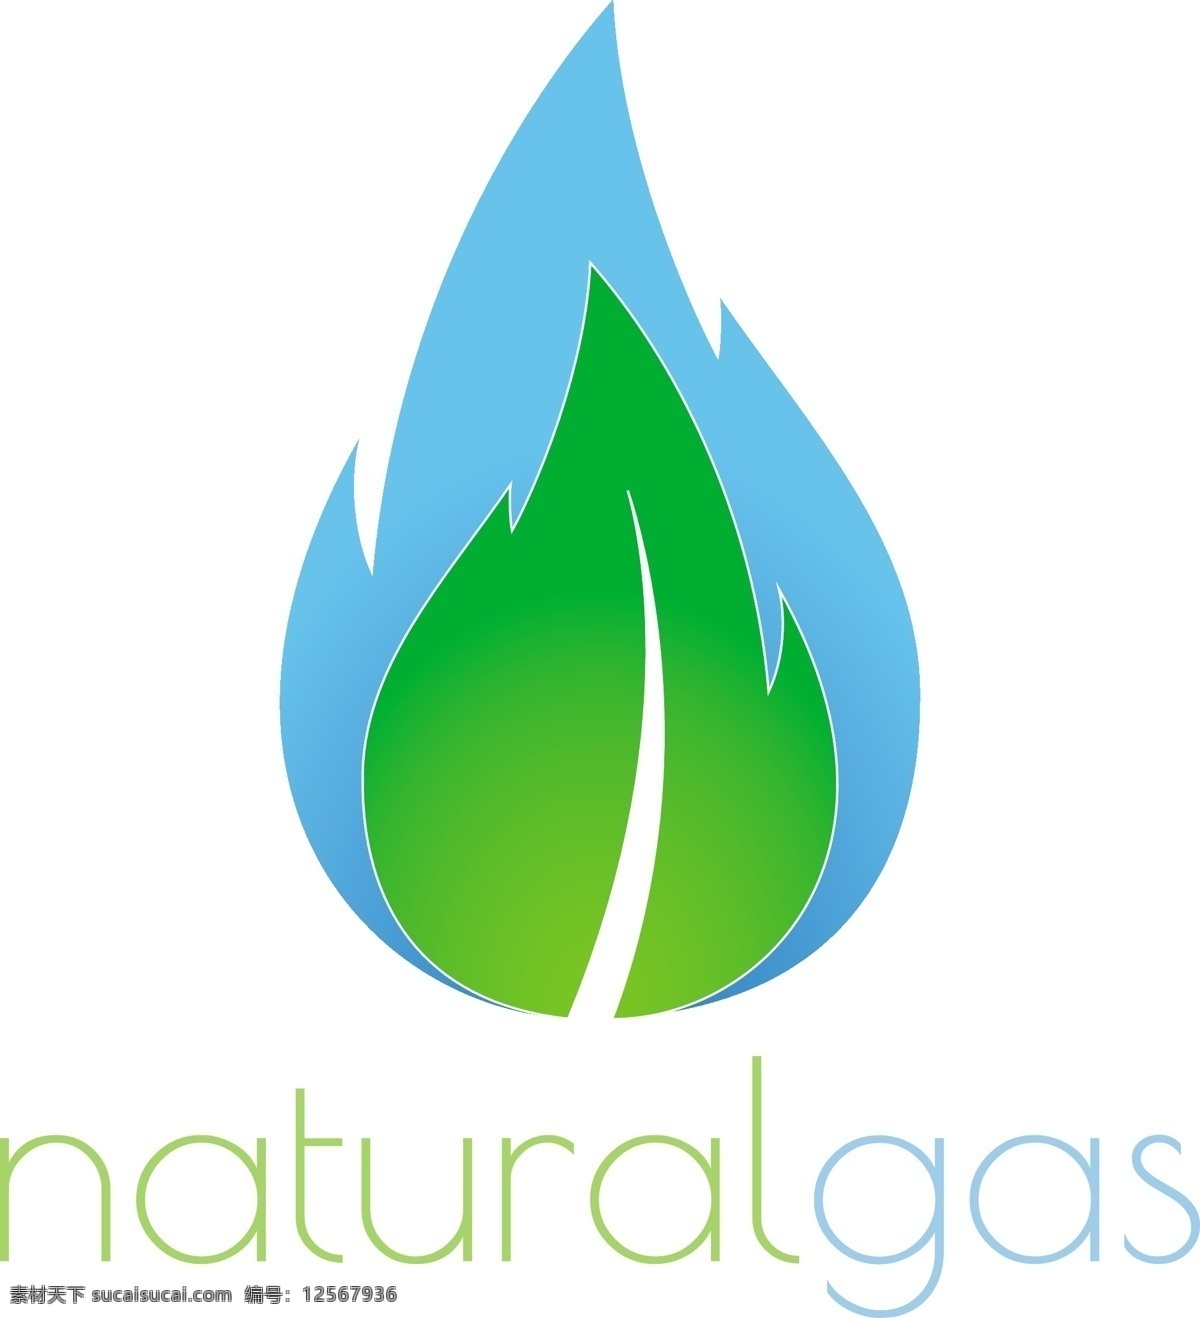 彩色 创意 树叶 logo 矢量 火苗 蓝色 创意图表 图形 商标 抽象 环保 企业logo 公司logo 标志设计 logo设计